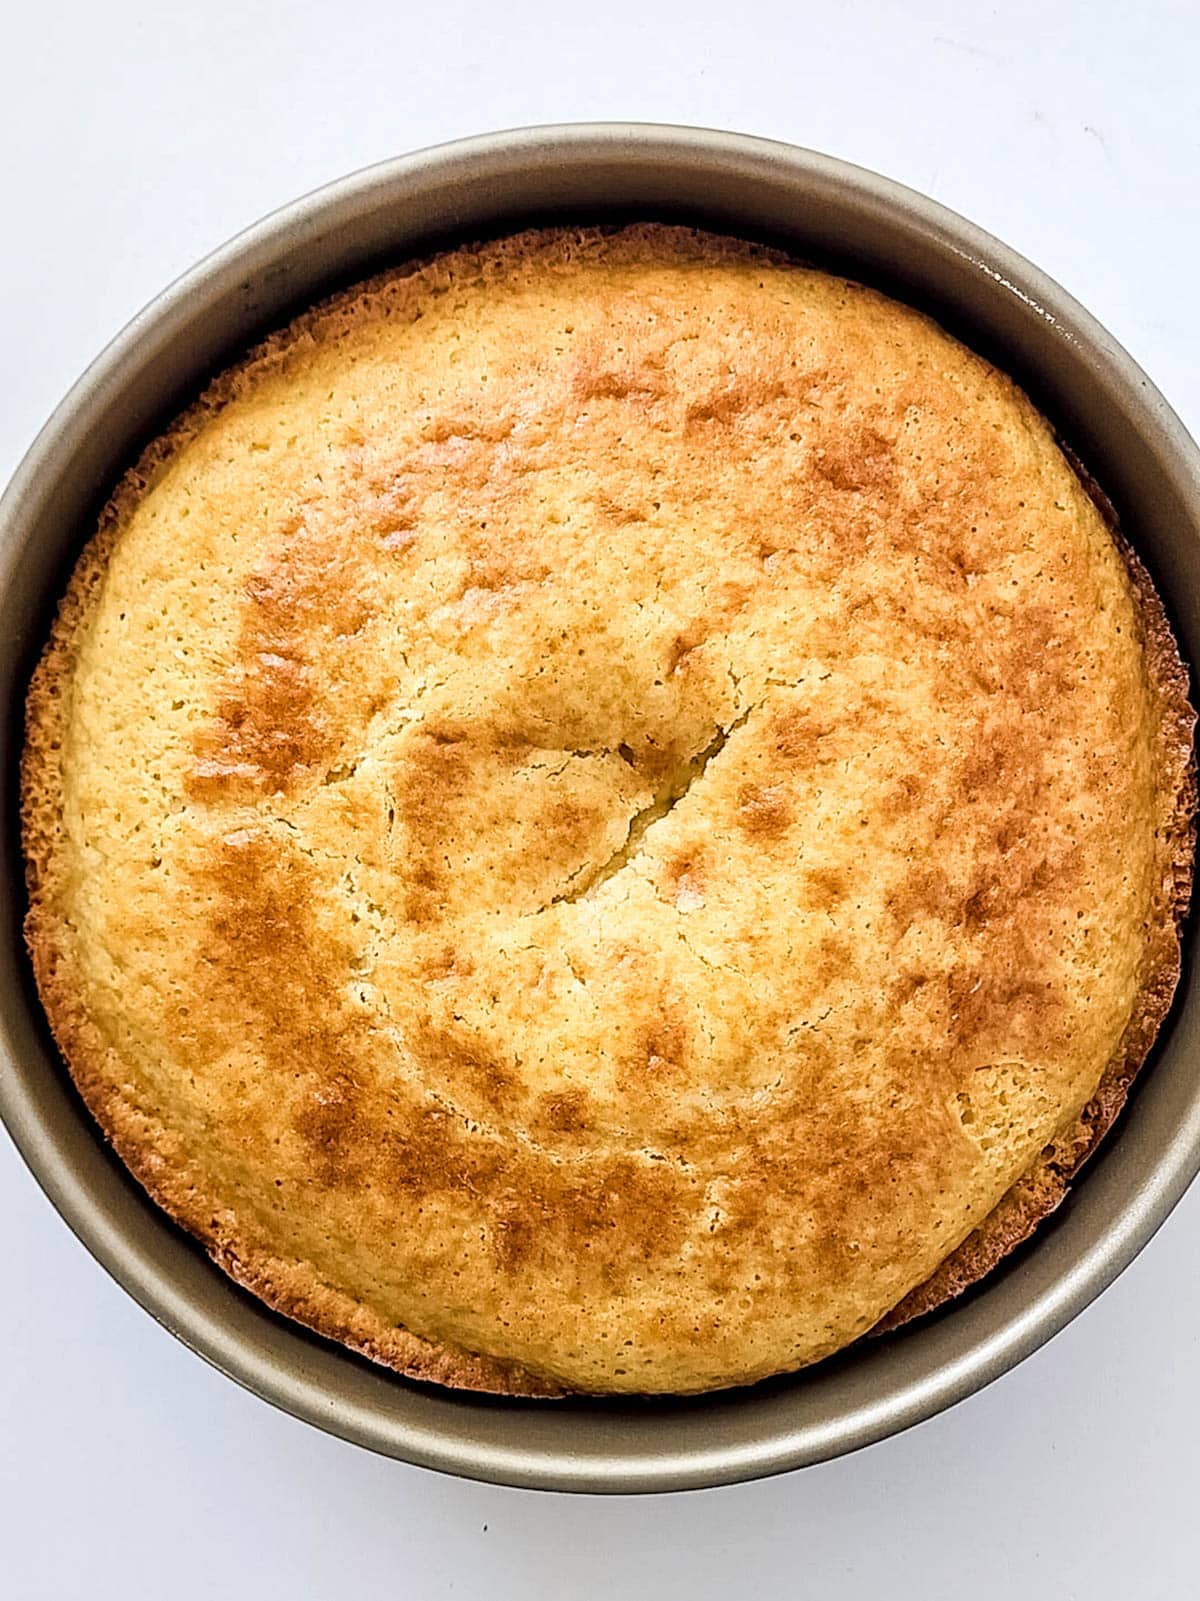 Cake baked in round cake pan